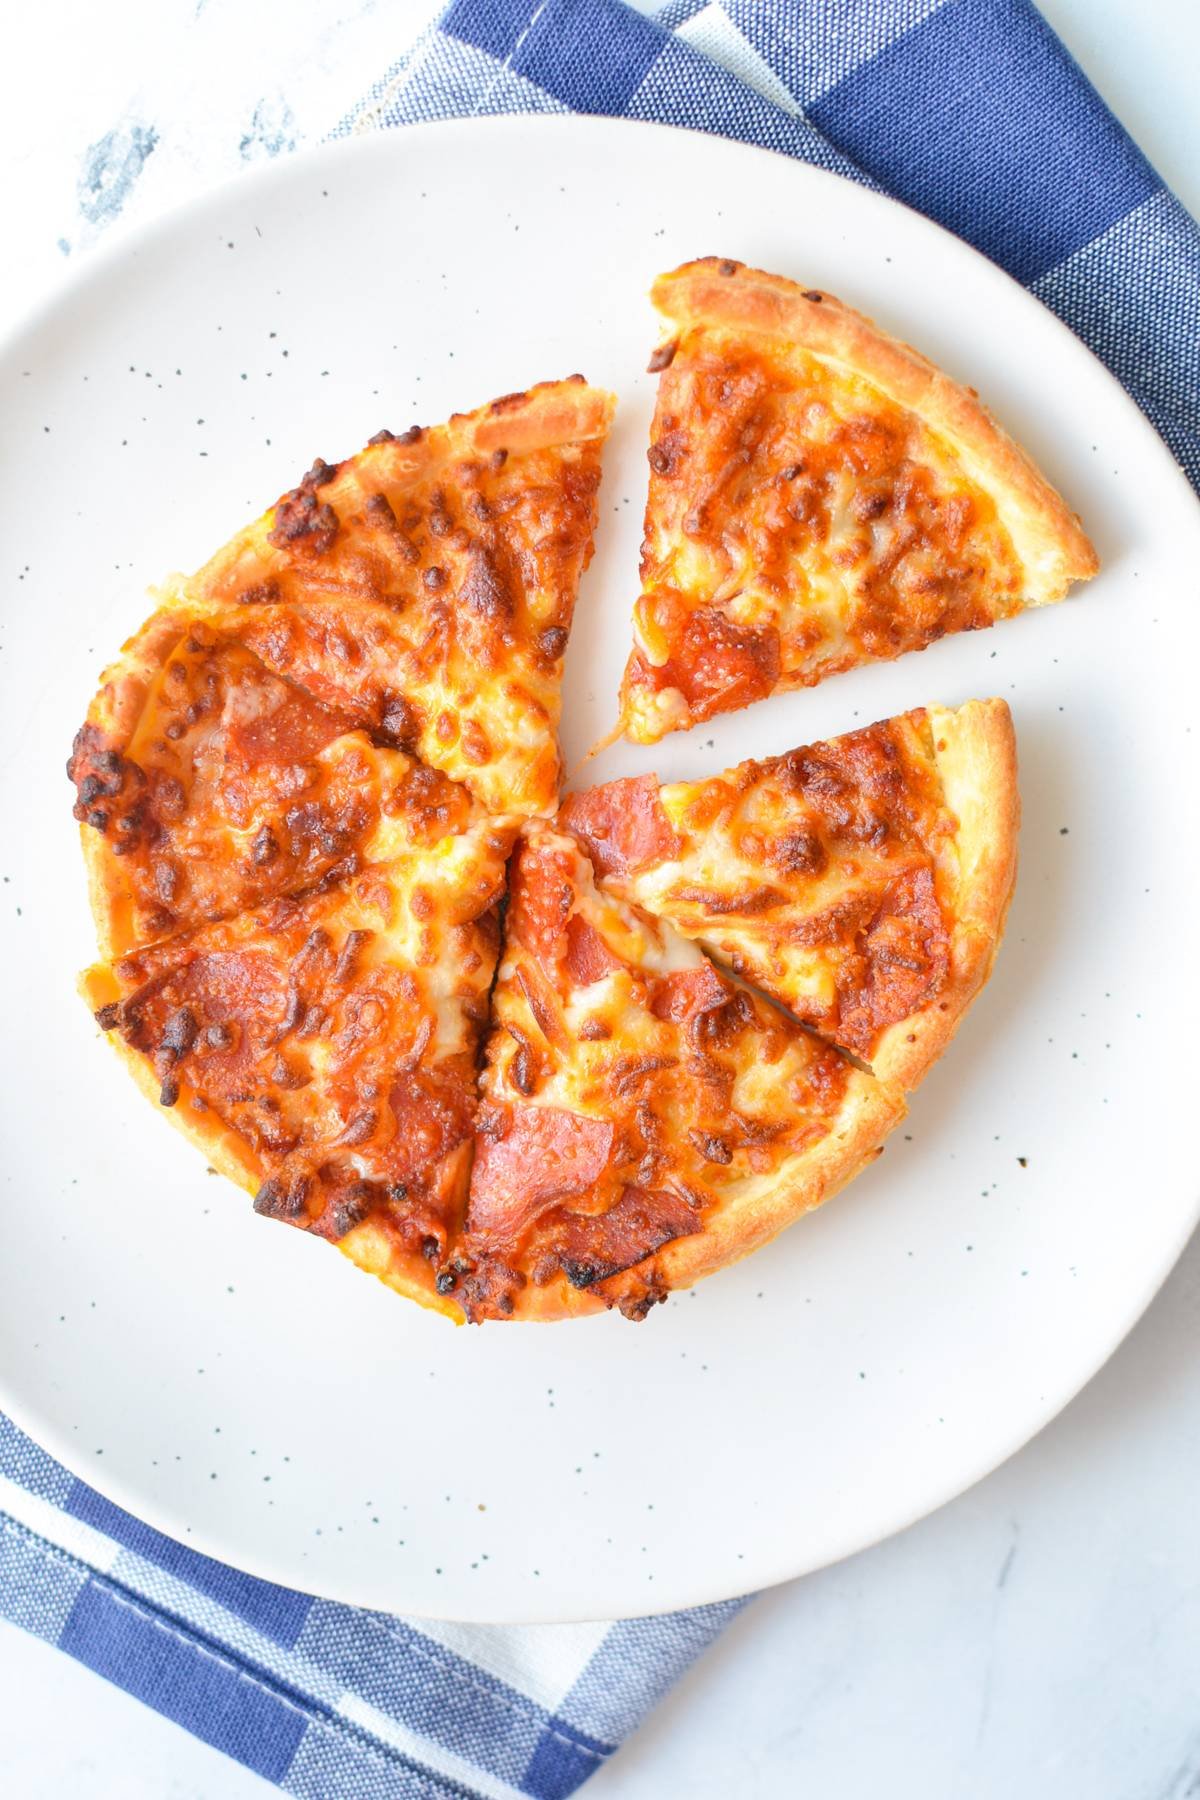 A mini pizza cut into 6 slices.